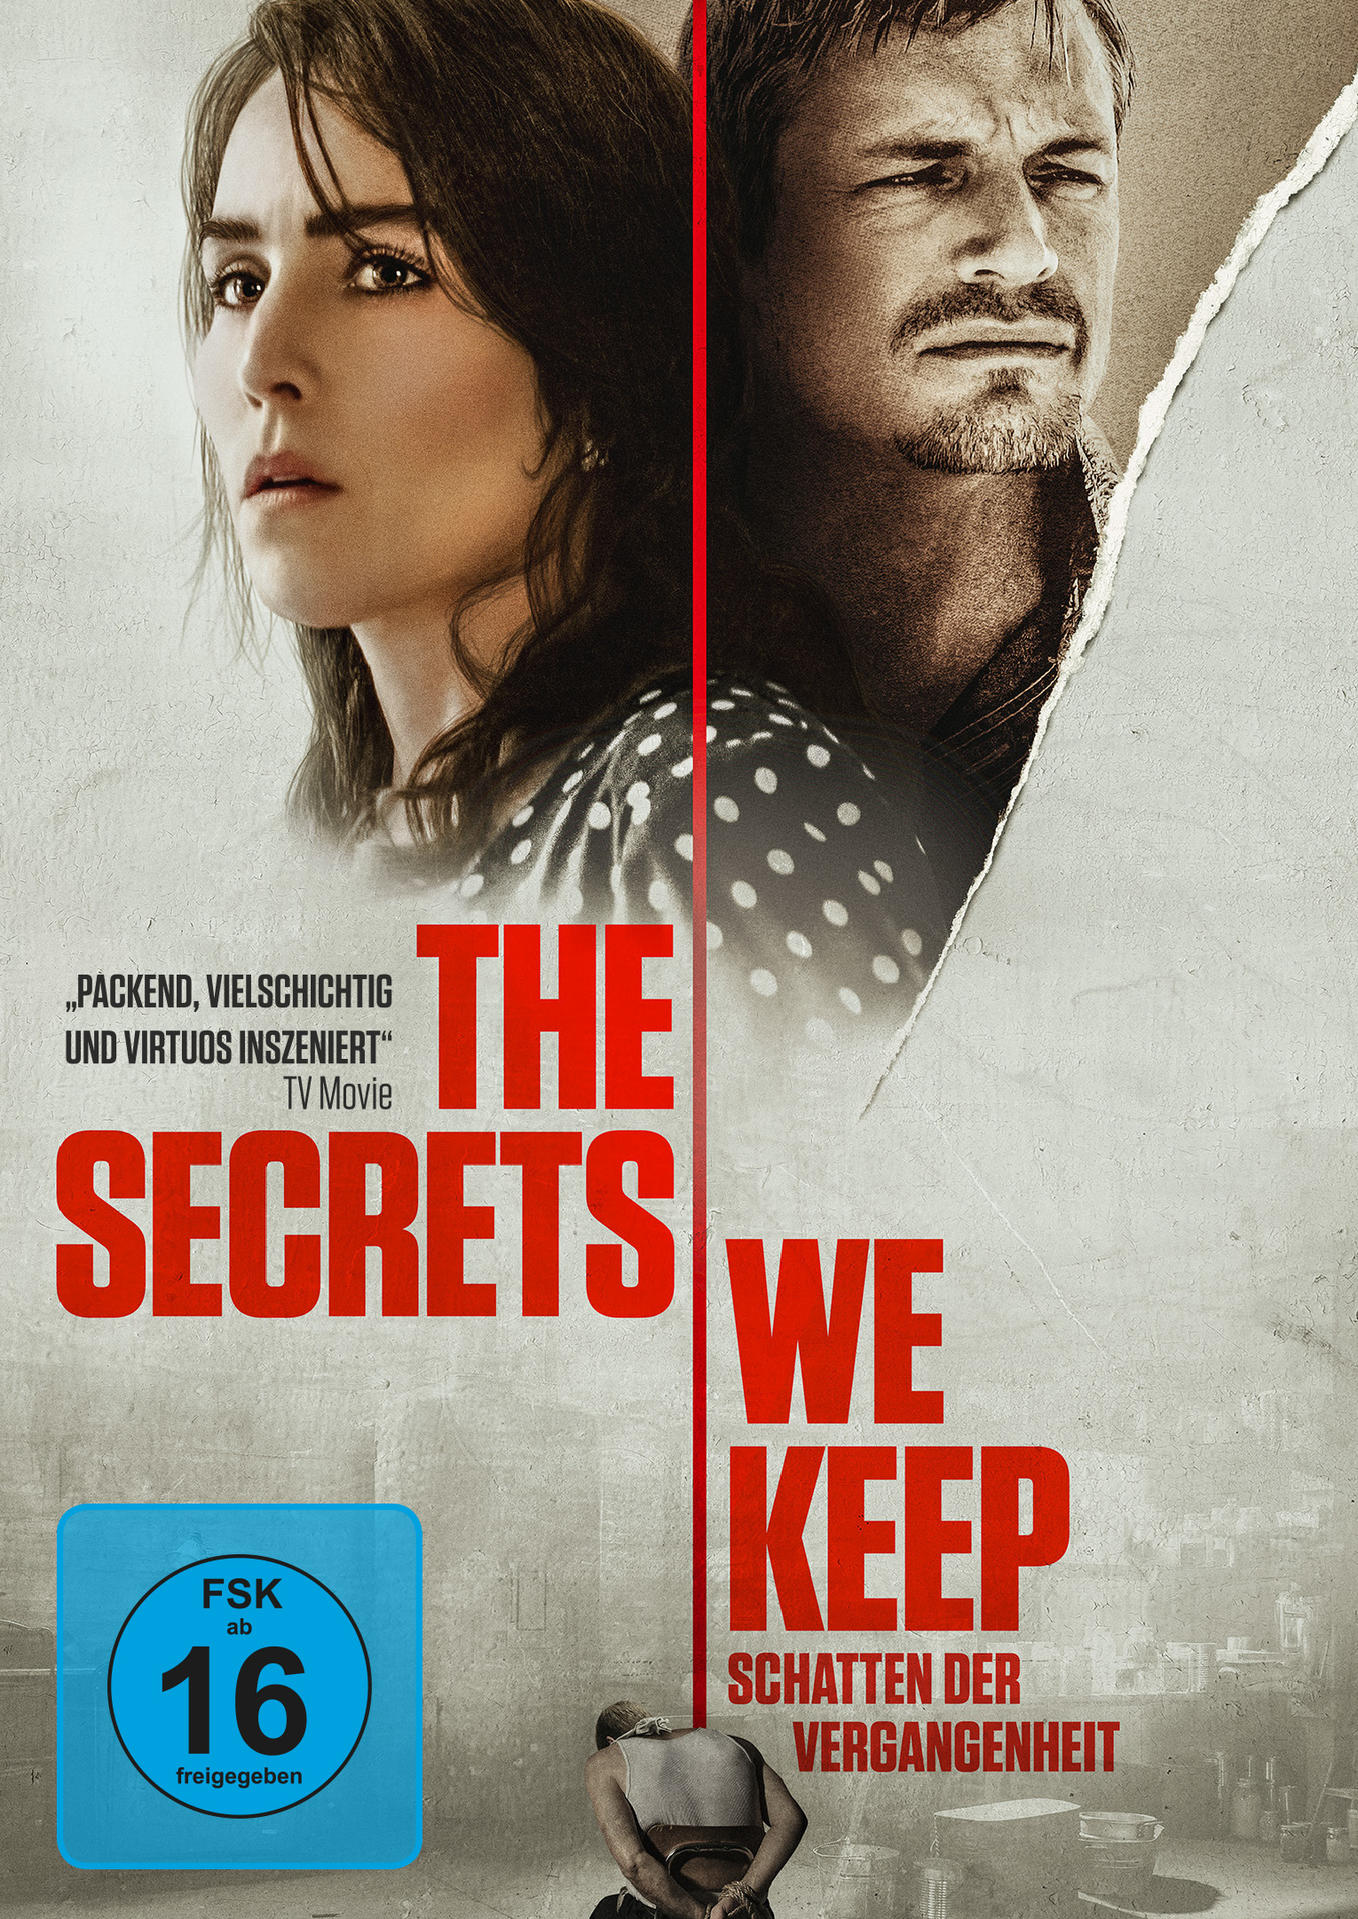 Secrets DVD We Keep Schatten The - Vergangenheit der